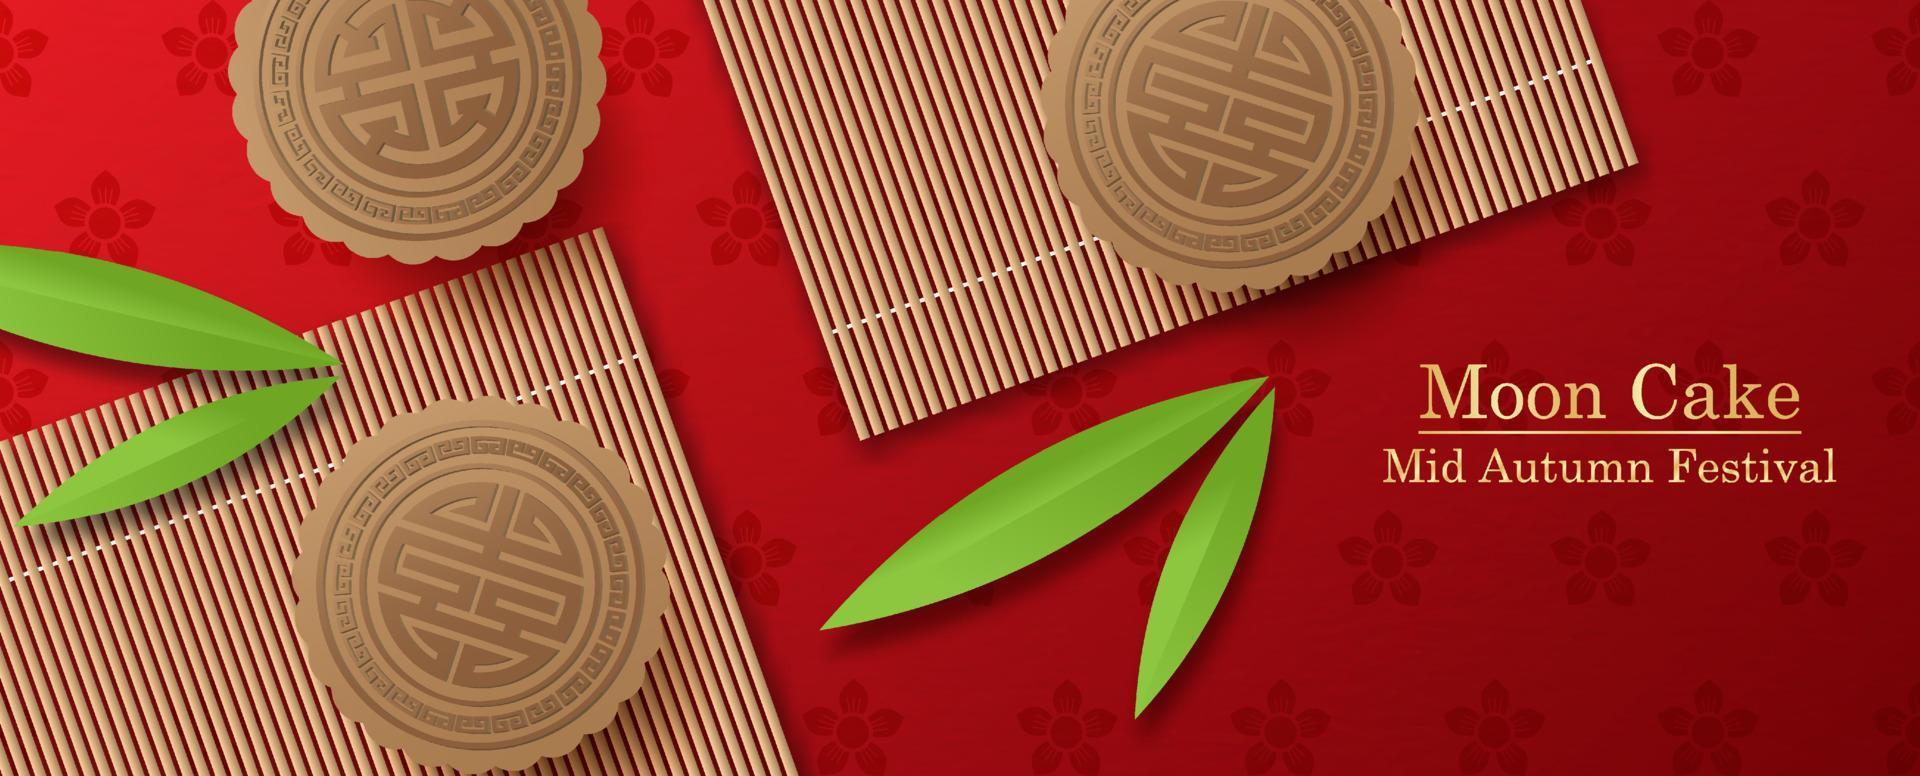 nahaufnahme und ernte chinesische mondkuchen auf bambusmatten und bambusblättern mit mondkuchen, mittherbstfestbeschriftung auf pflaumenblumenmuster und rotem verlaufshintergrund vektor